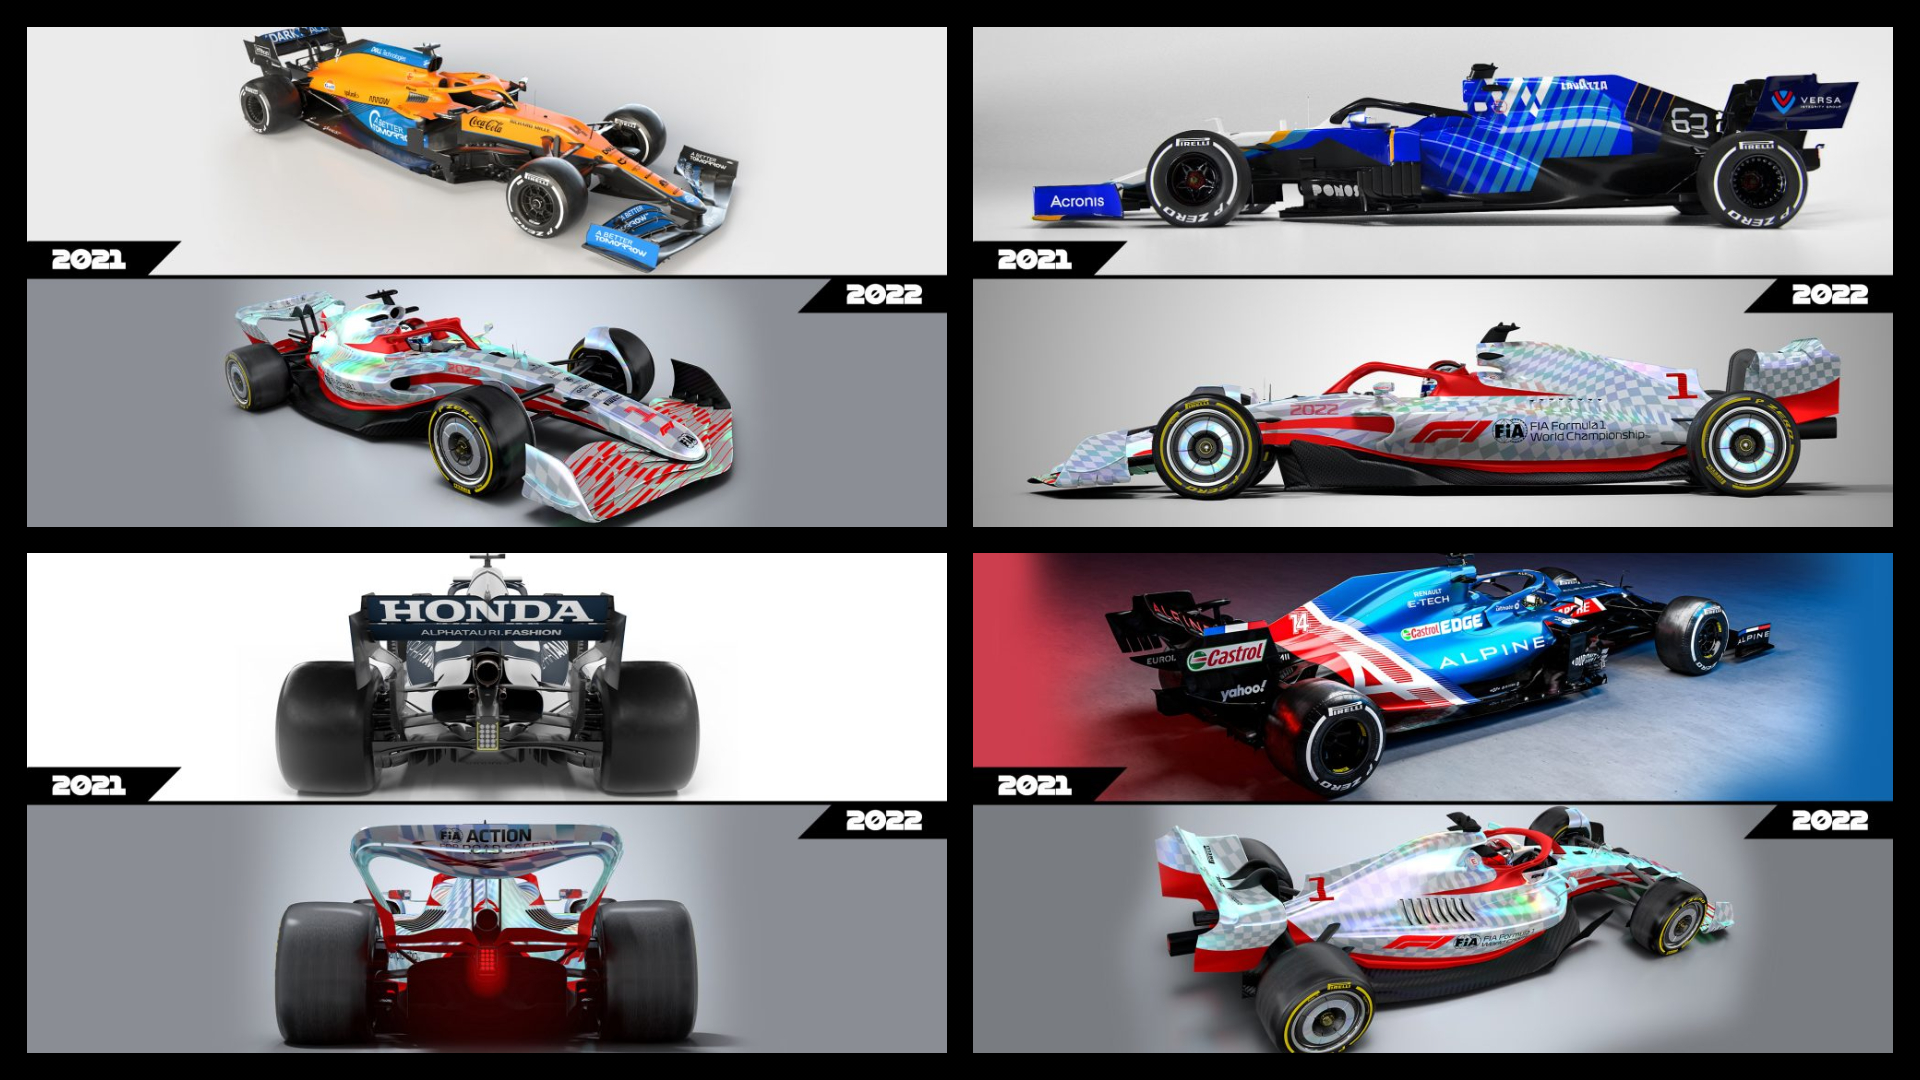 Comparativa coches F1 2022 vs 2021